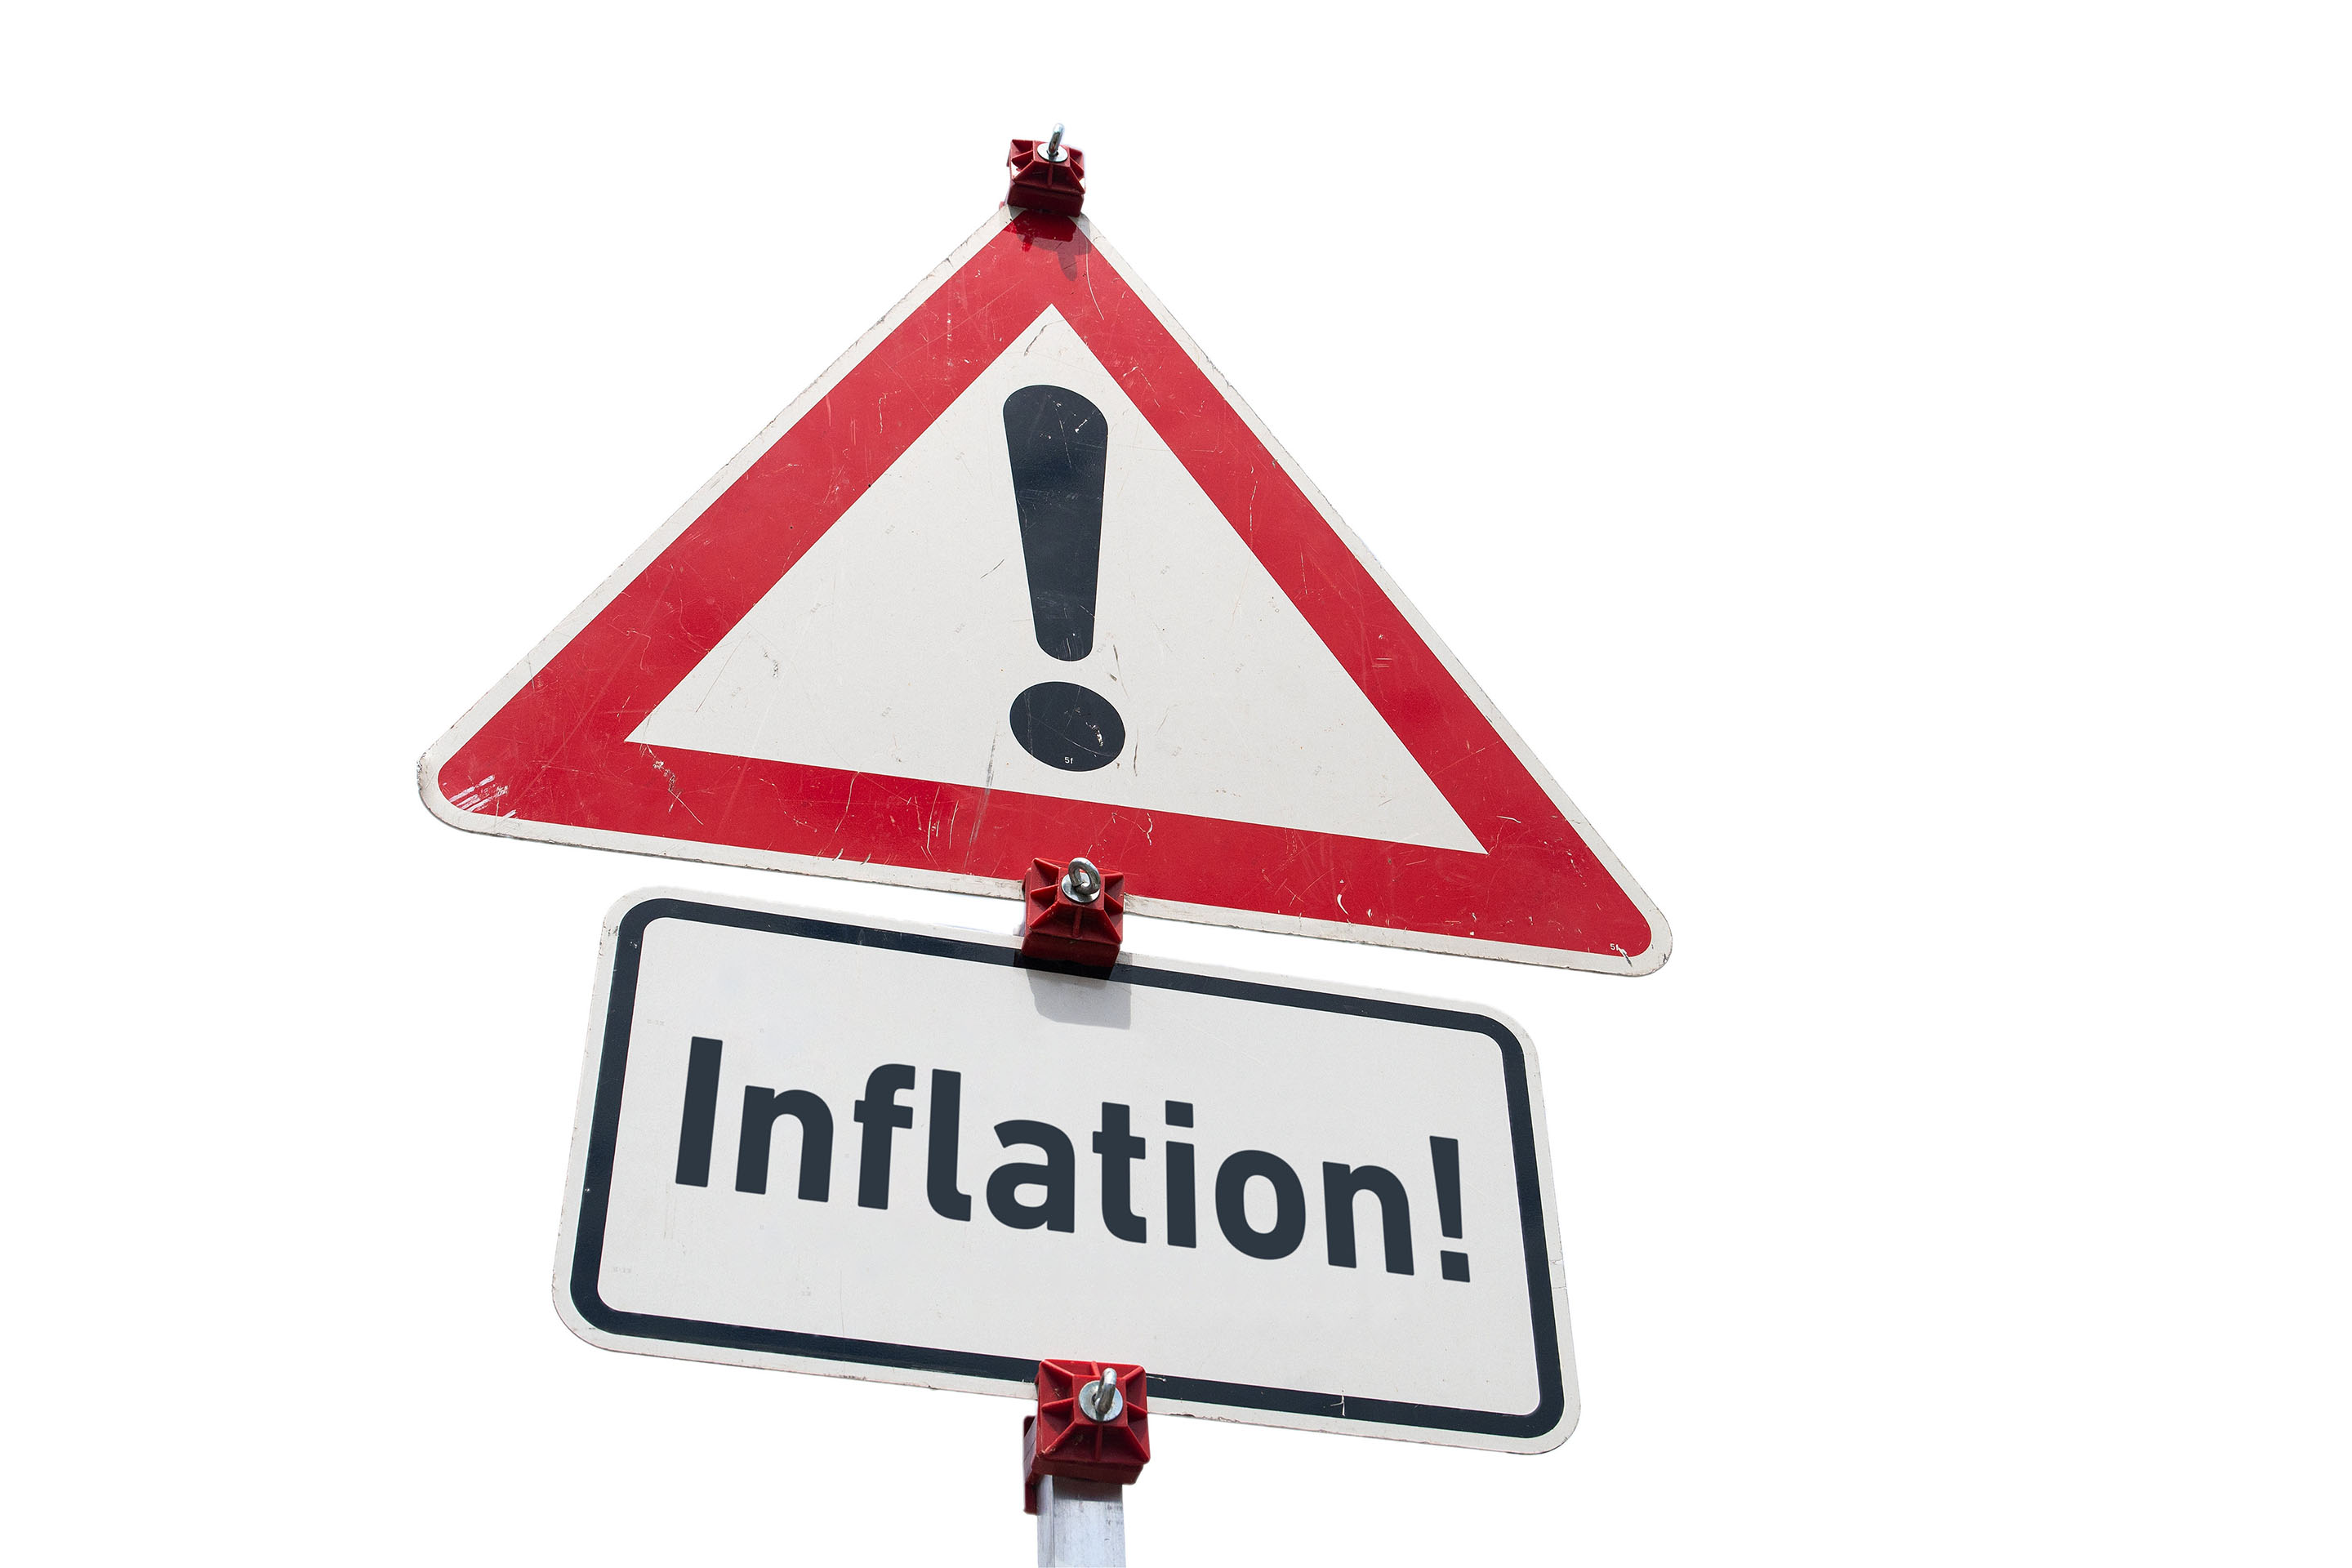 Warnschild 'Gefahrstelle' und ein Zusatzschild mit der Aufschrift 'Inflation!' - Inflationsmonitor